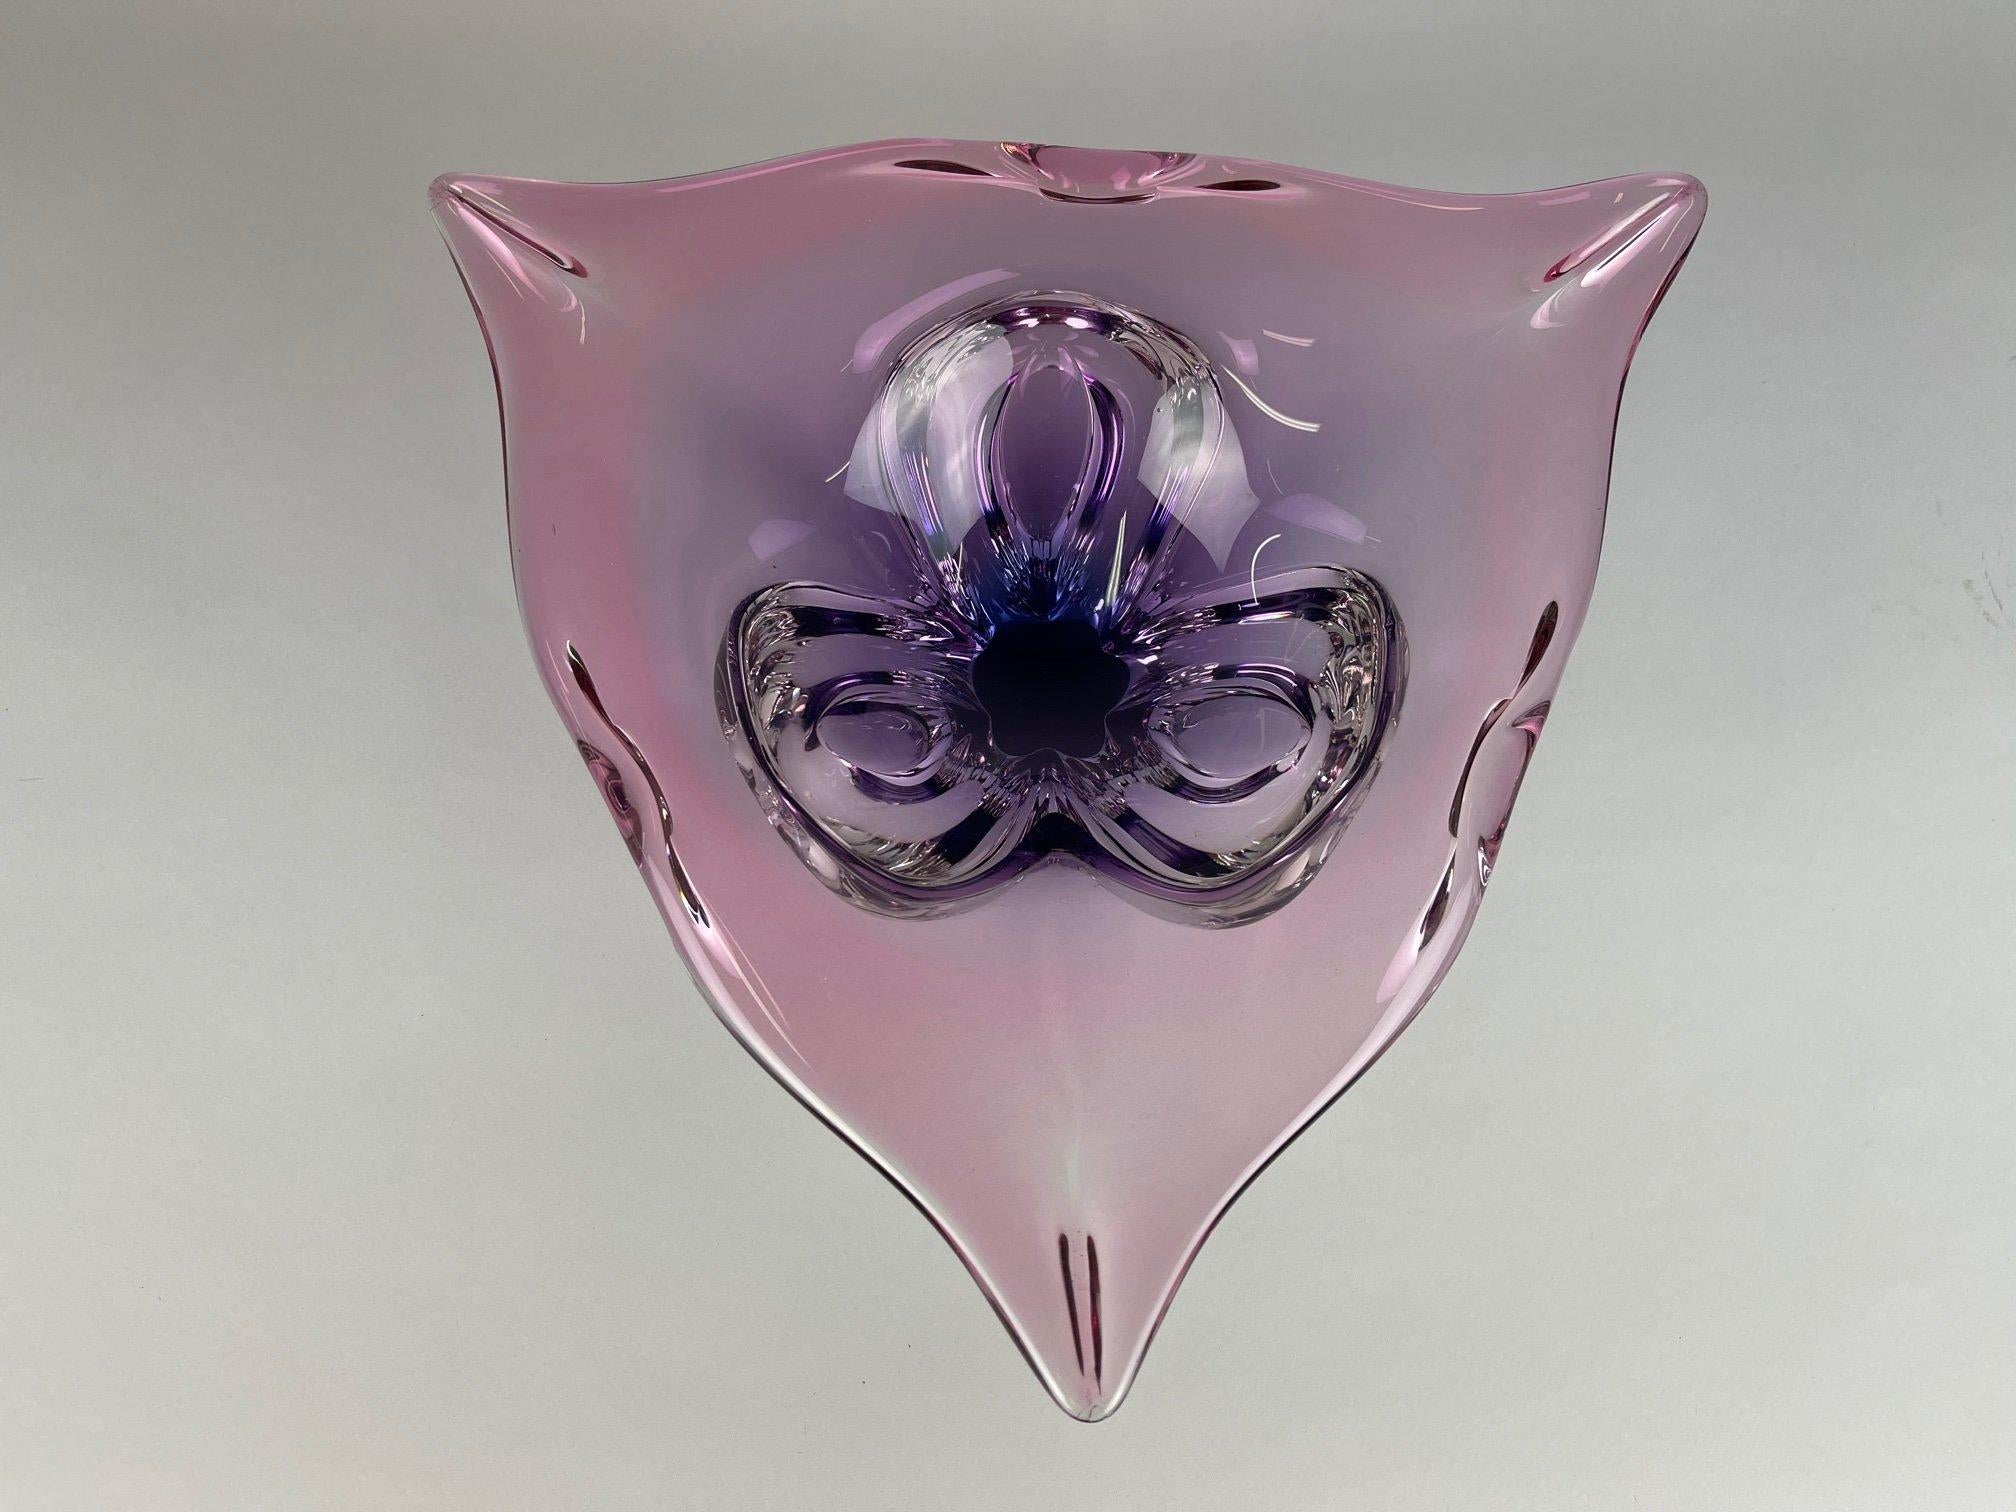 20th Century Art Glass Bowl by Josef Hospodka for Chribska Glassworks, 1960's